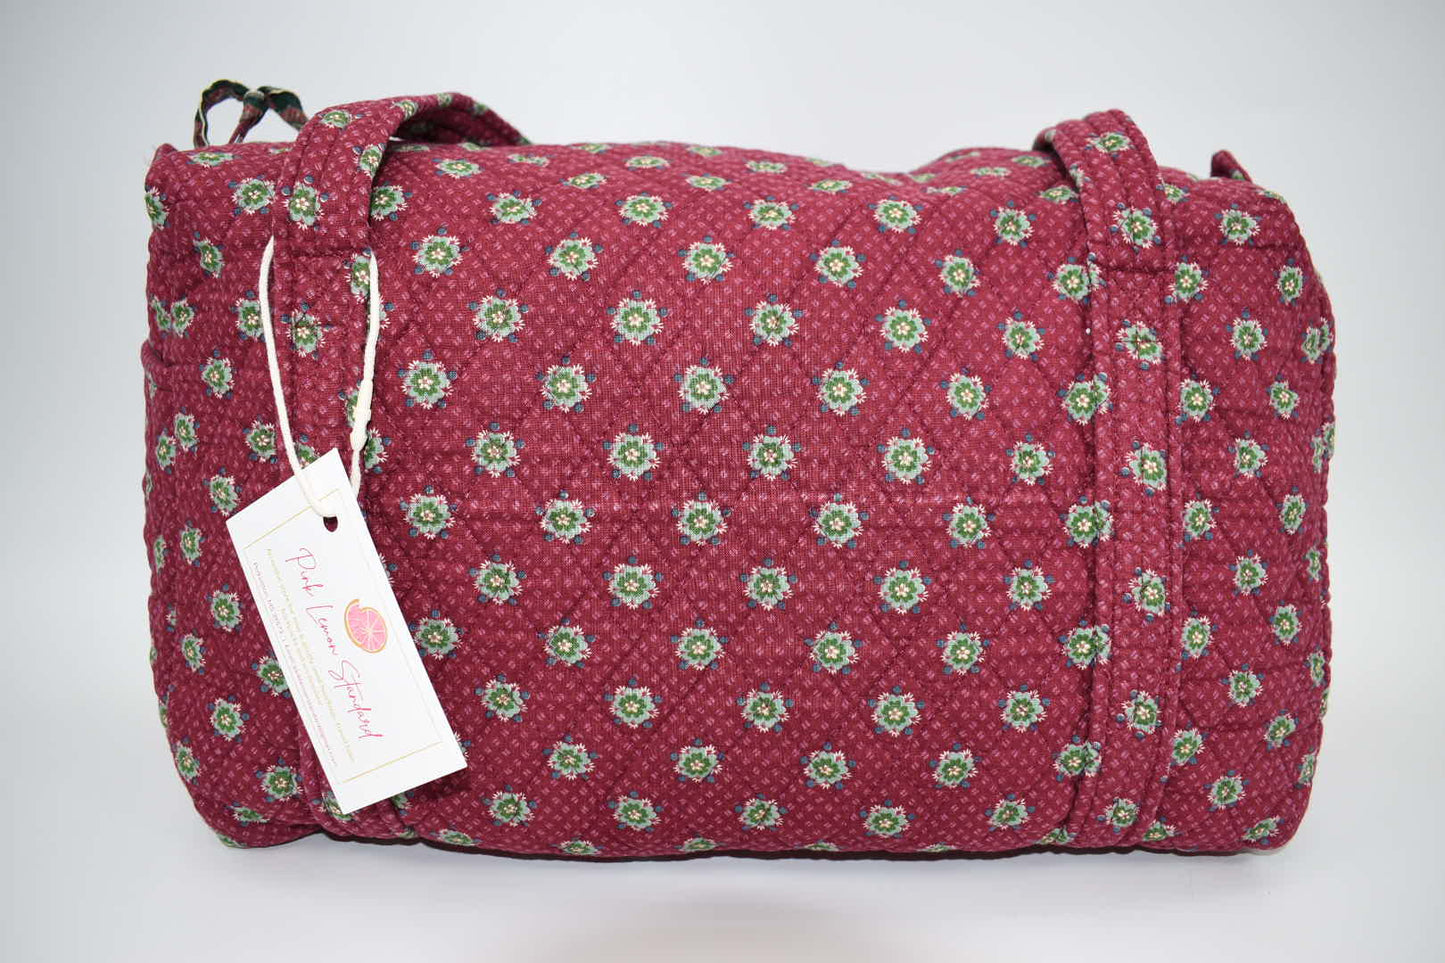 Vintage Vera Bradley Small Duffel Bag in "Plum -1987" Pattern